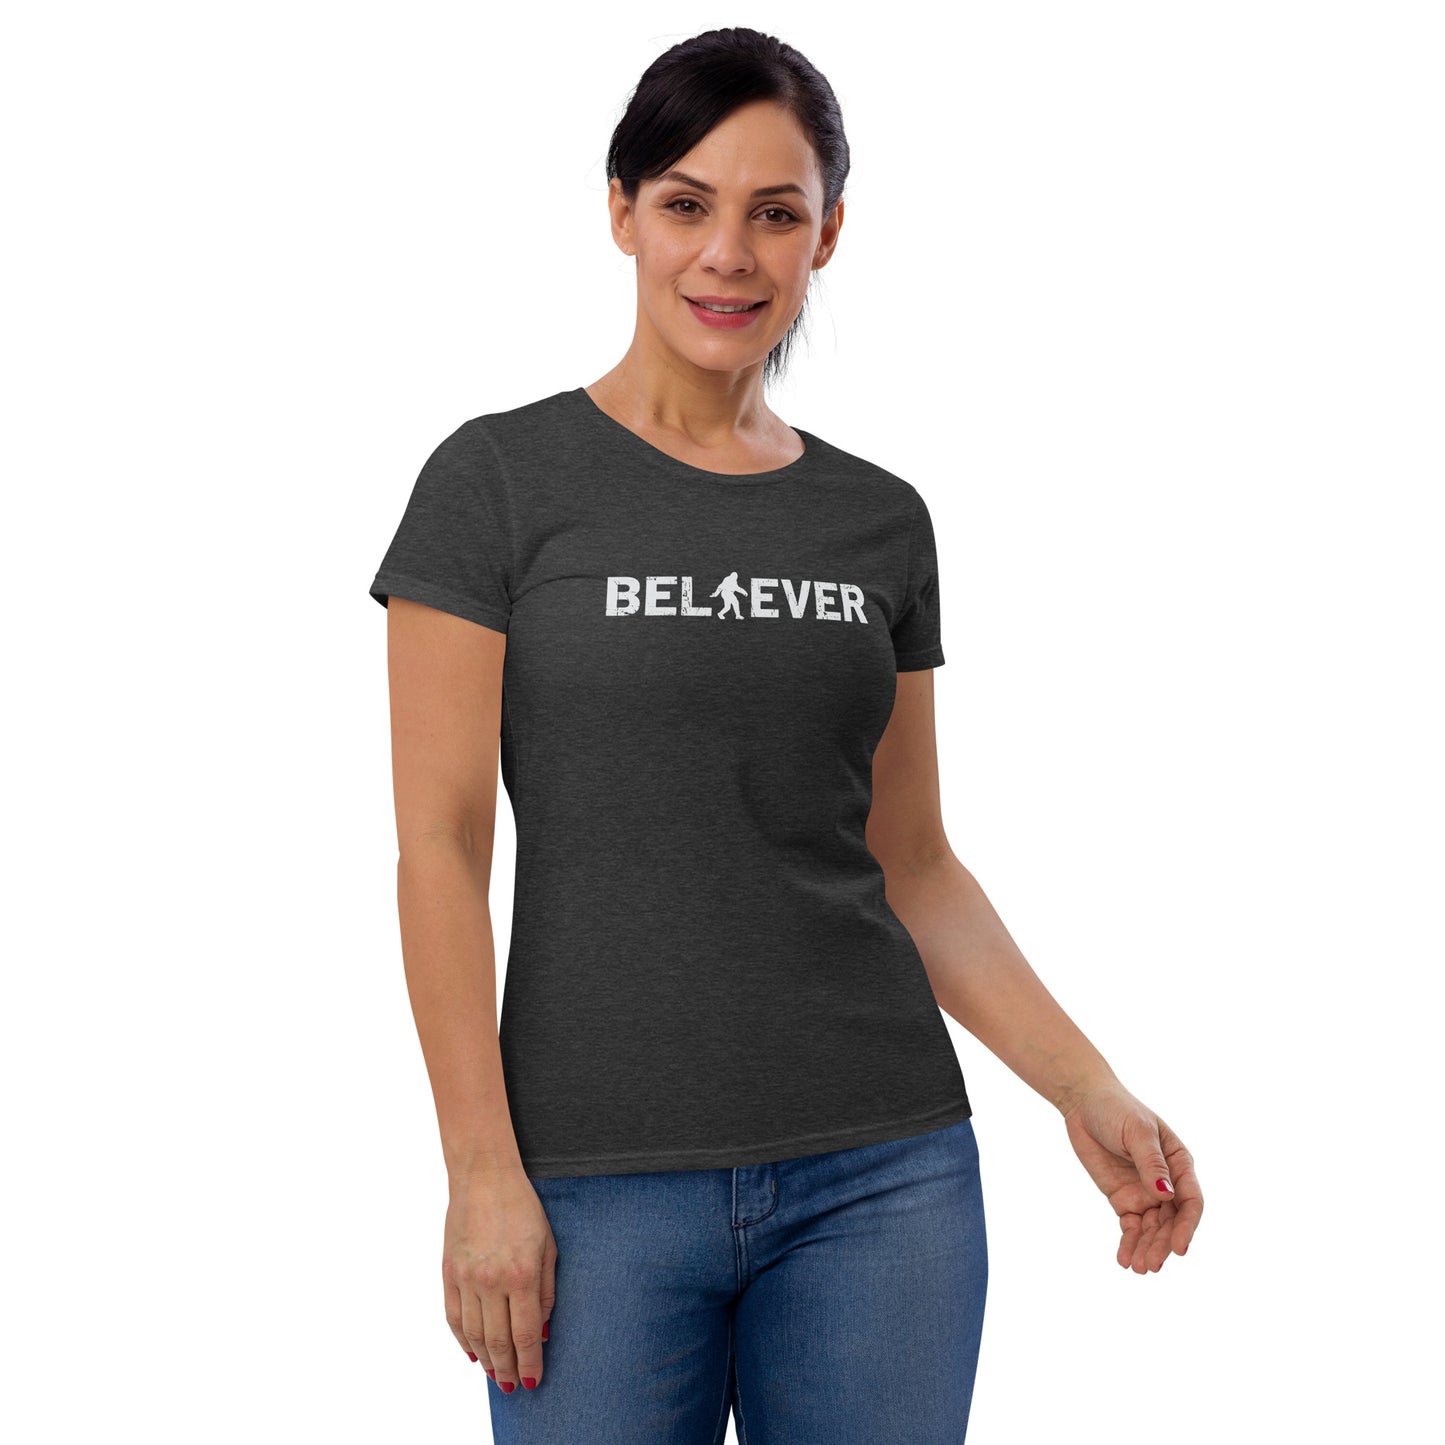 Women's Fashion Fit T-shirt - Bigfoot Believer